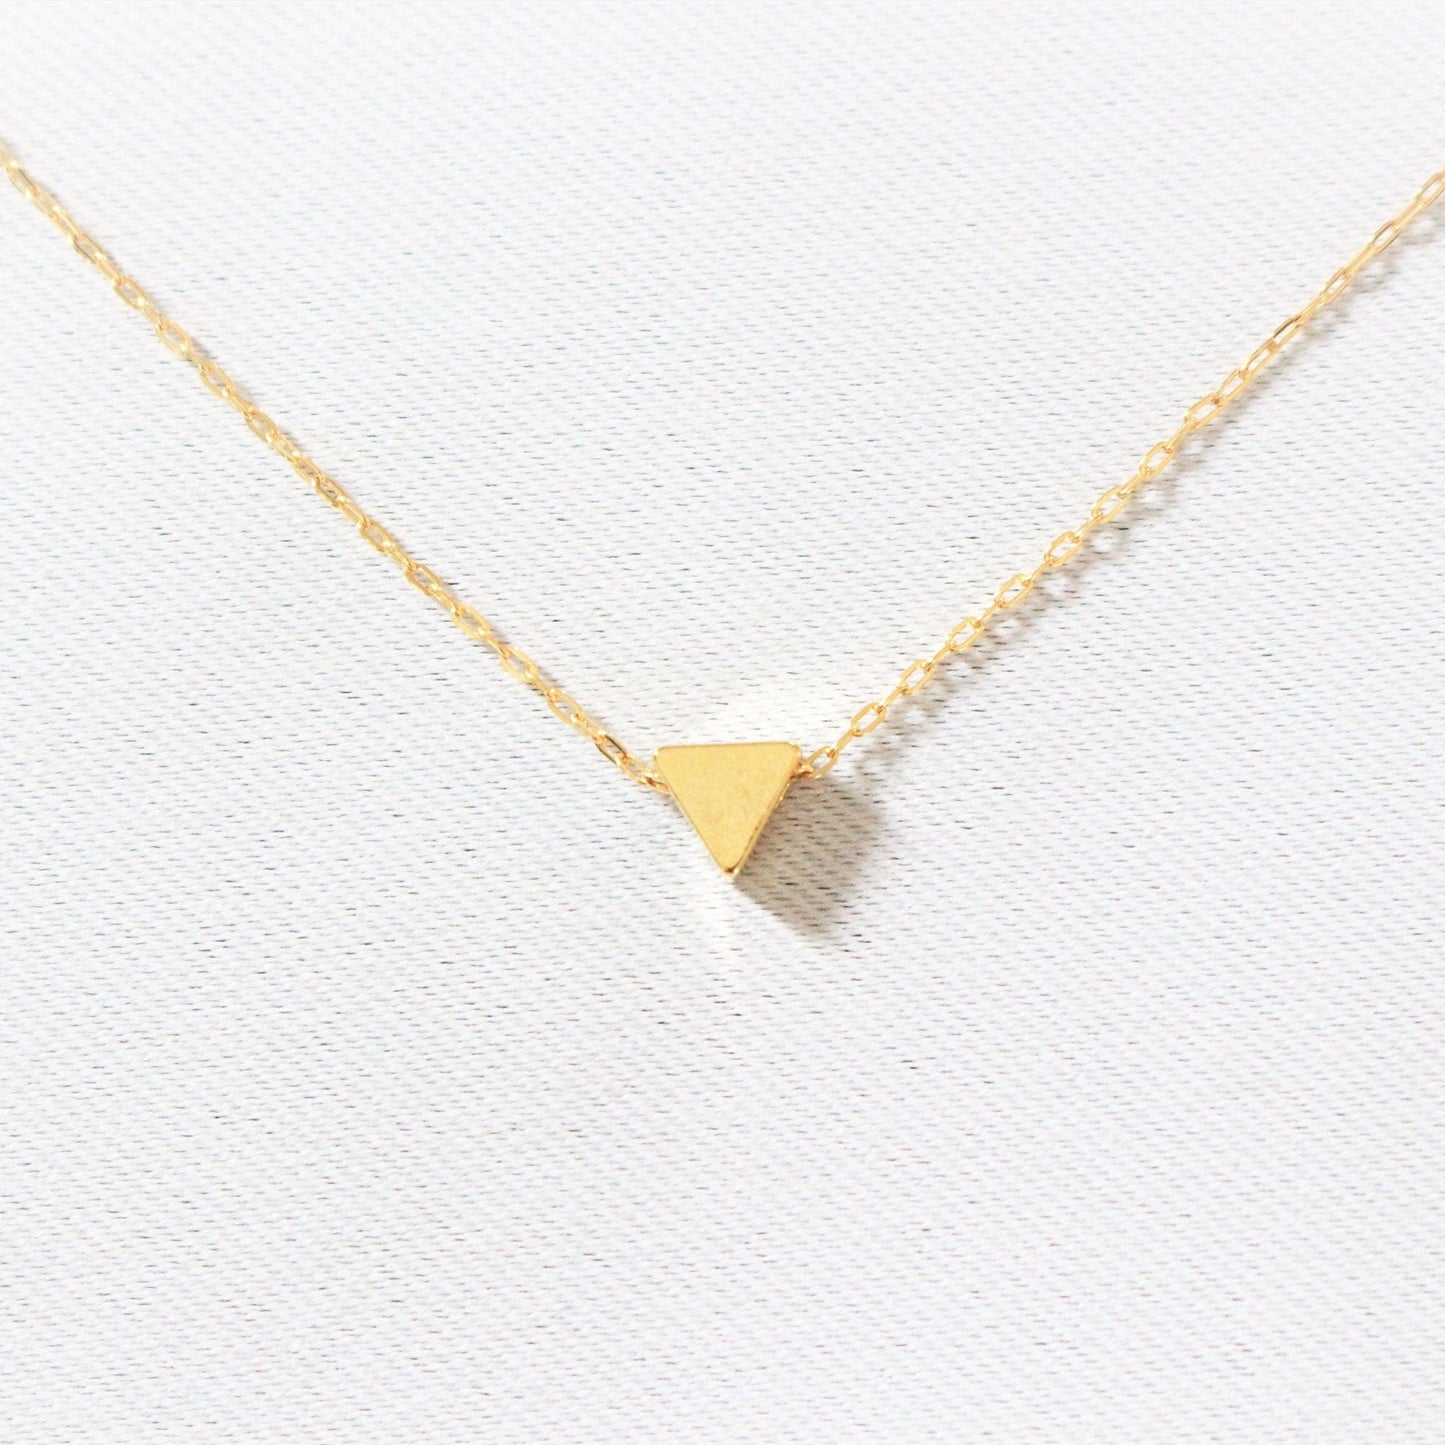 Collier triangle minimaliste en gold filled 14 carats | Pendentif triangle | Bijou de qualité | Collier délicat délicat | Cadeau pour demoiselle d'honneur